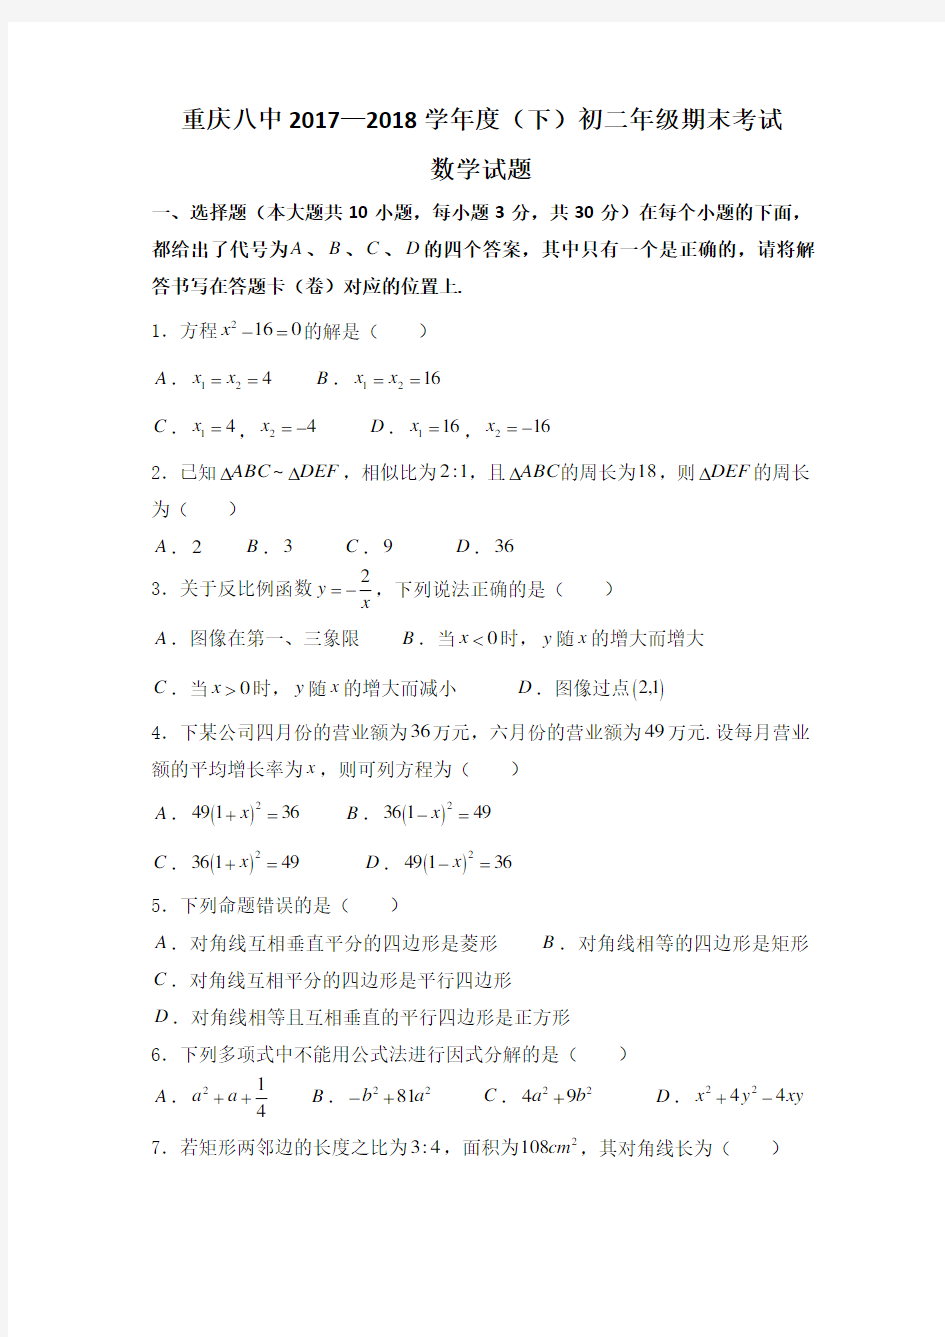 重庆八中2017—2018学年度(下)初二年级期末考试